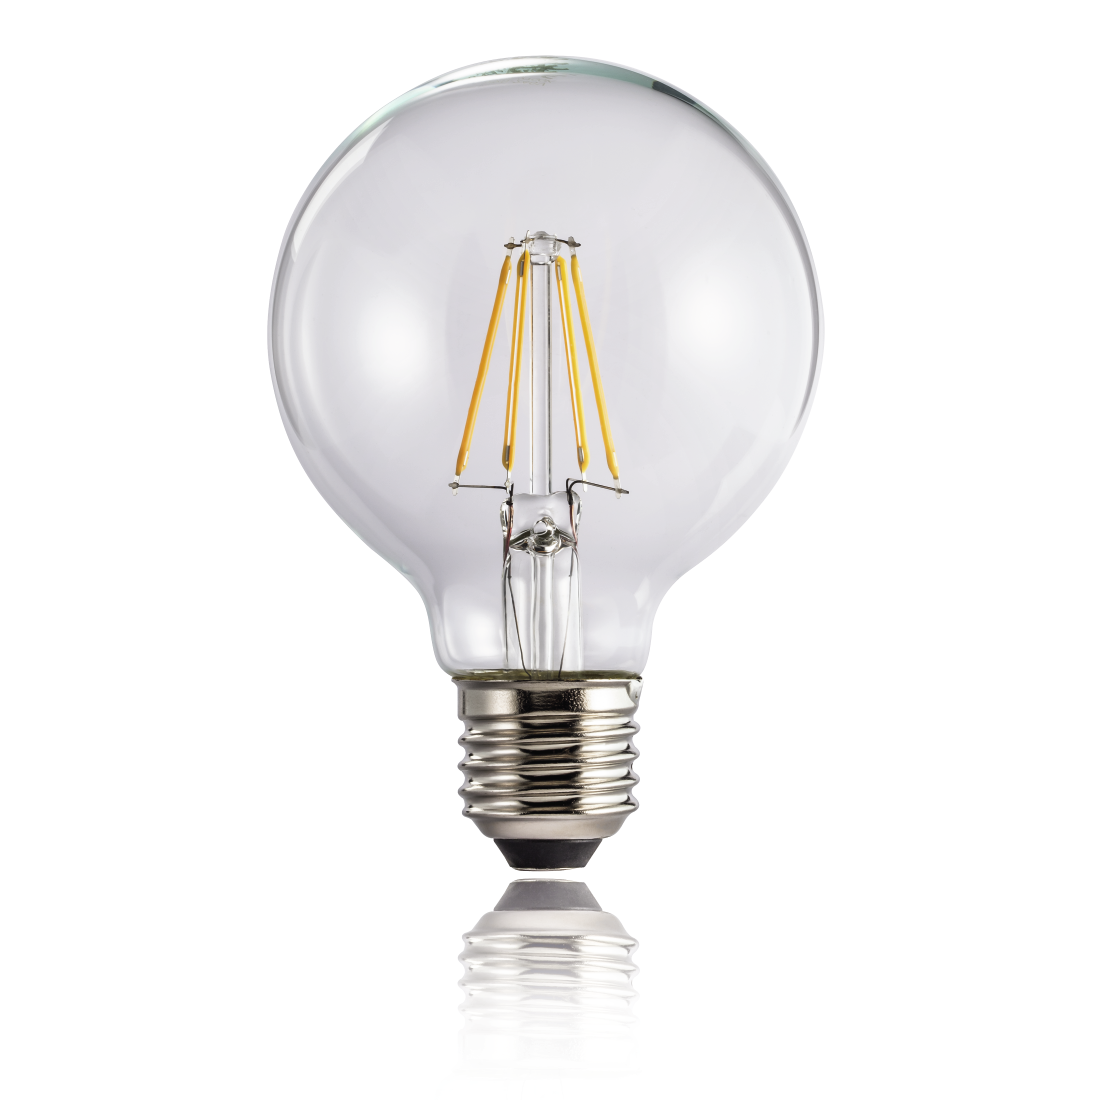 abx2 High-Res Image 2 - Xavax, Ampoule filament à LED, E27, 470lm rempl. ampoule globe 40W, blc chaud